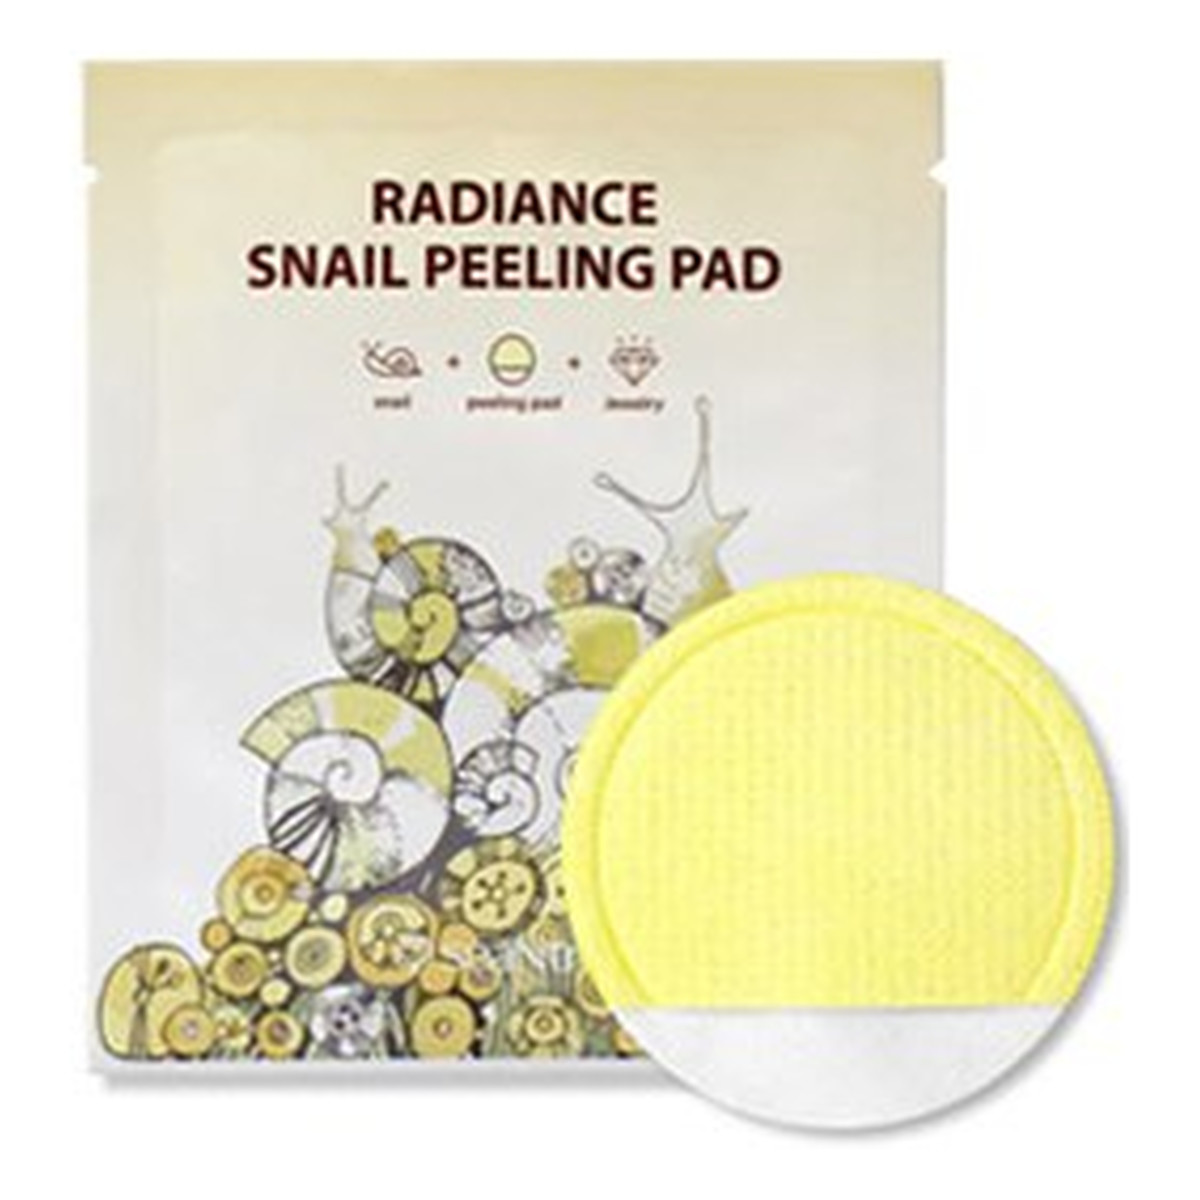 seaNtree Radiance Snail Peeling Pad Oczyszczająco-Peelingujący Wacik Do Twarzy 8ml